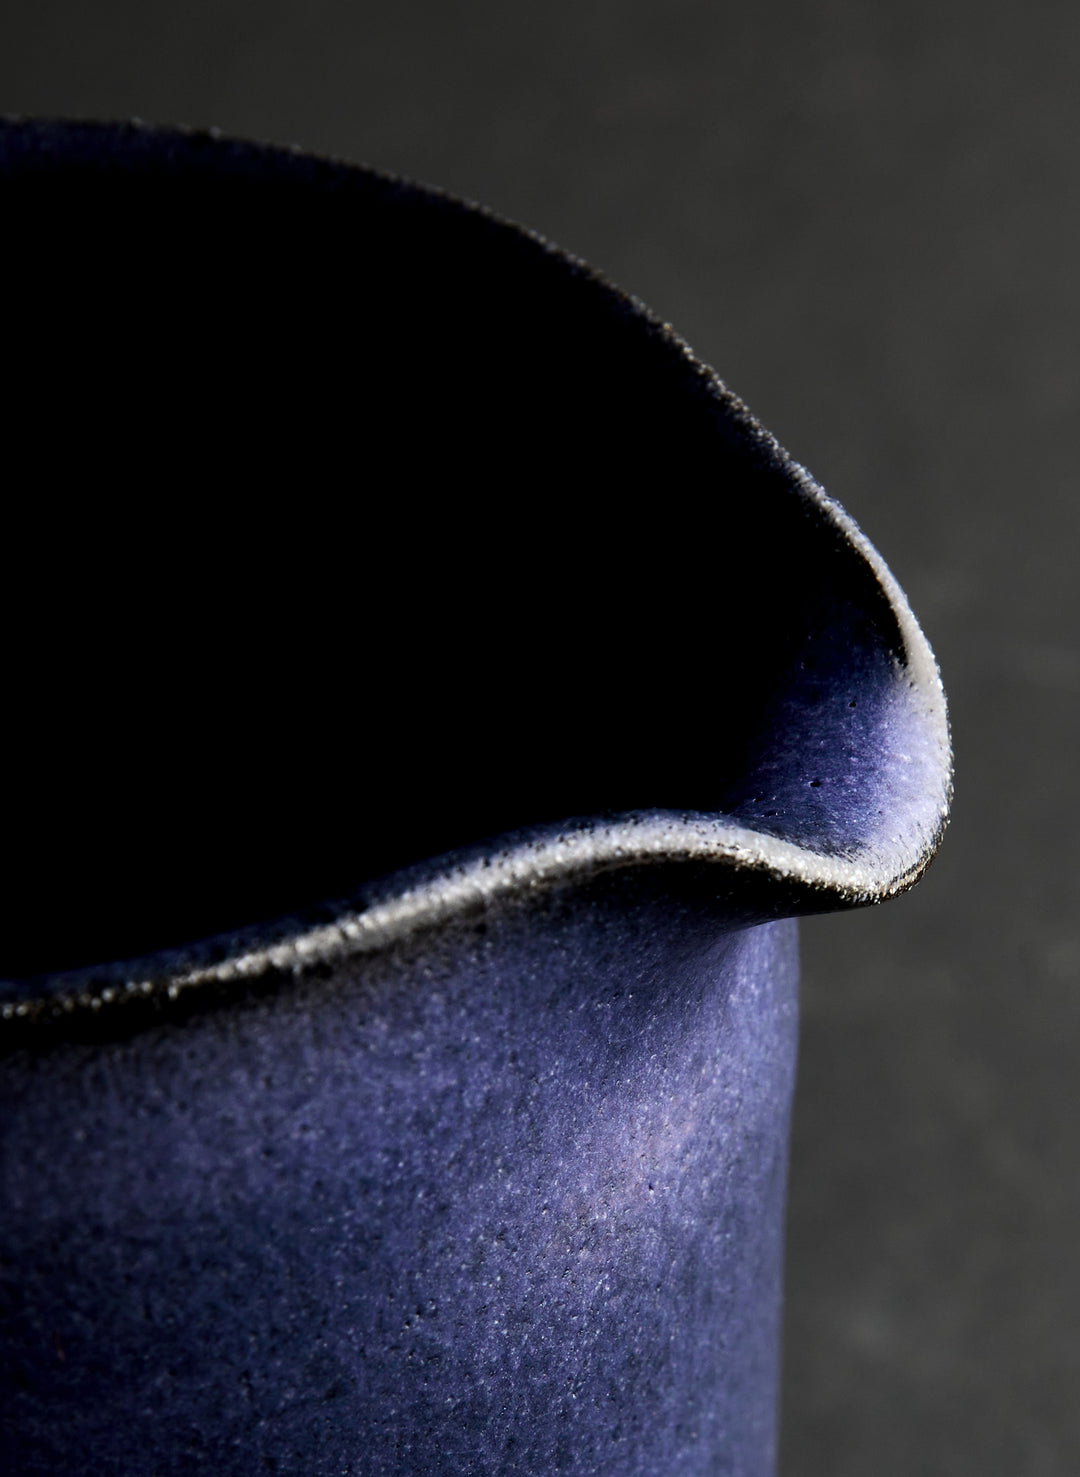 a close up of a blue pitcher